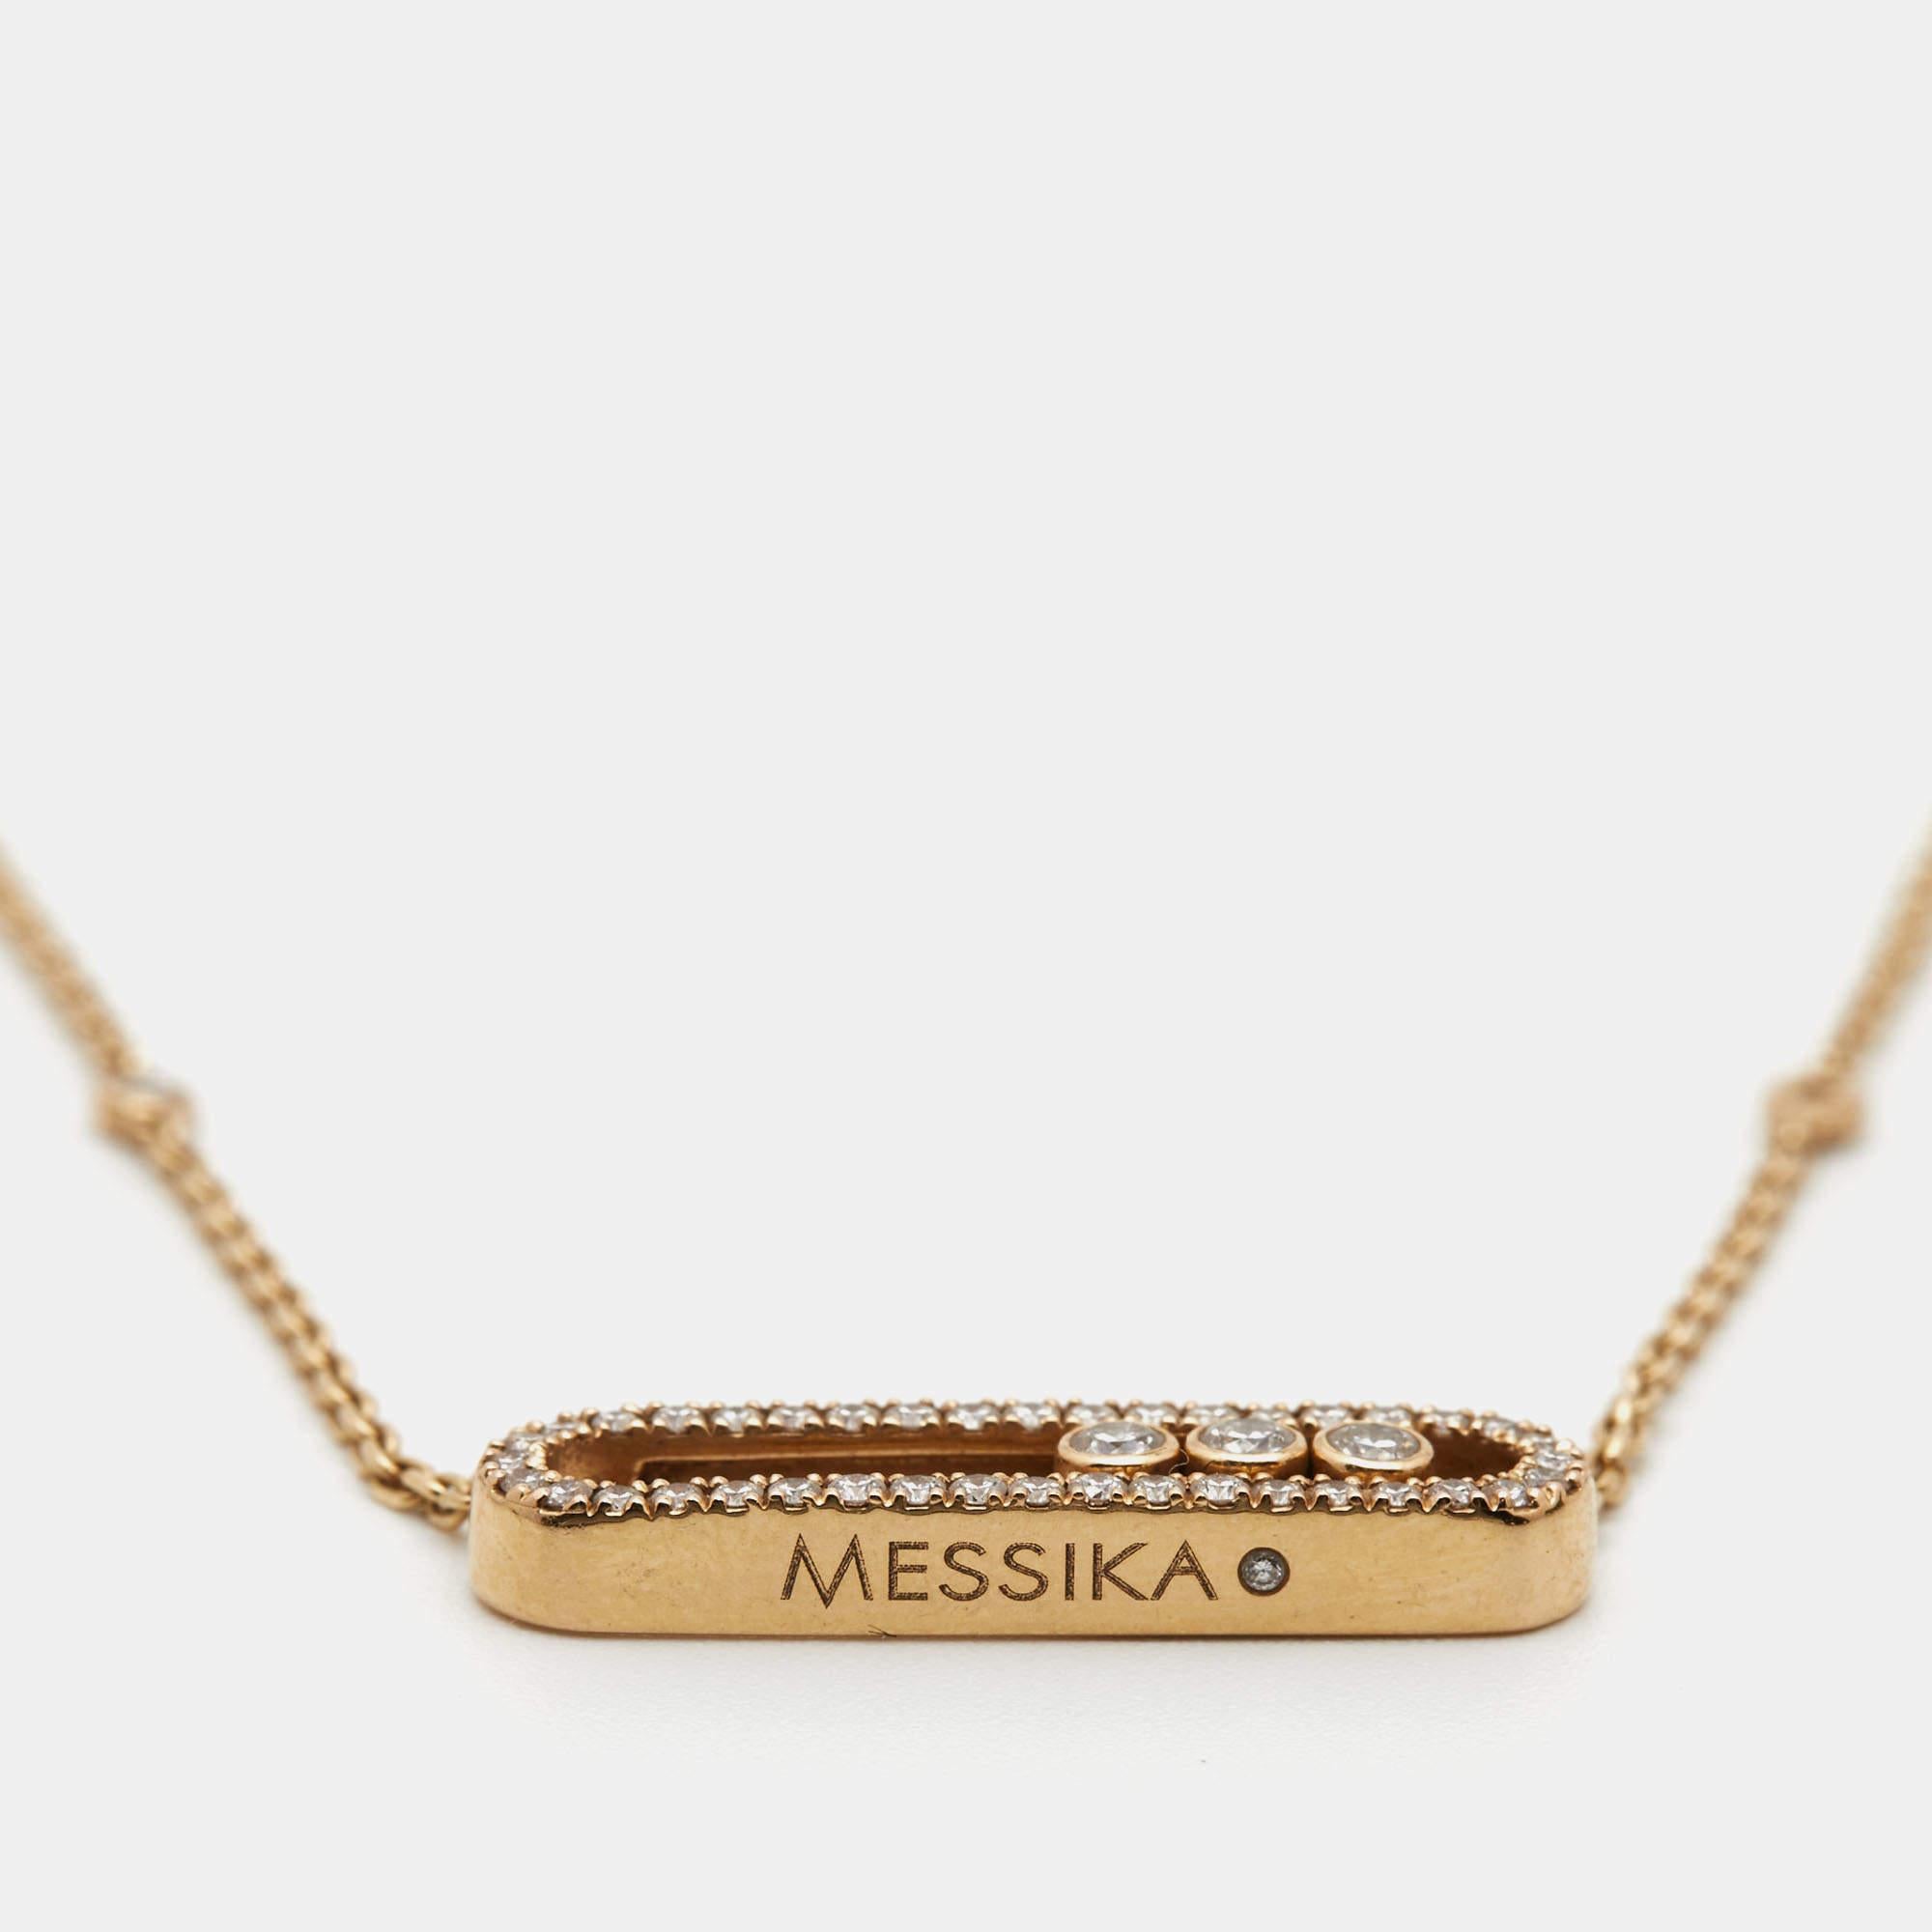 Messika Baby Move Pavé Diamonds 18k Rose Gold Necklace 1